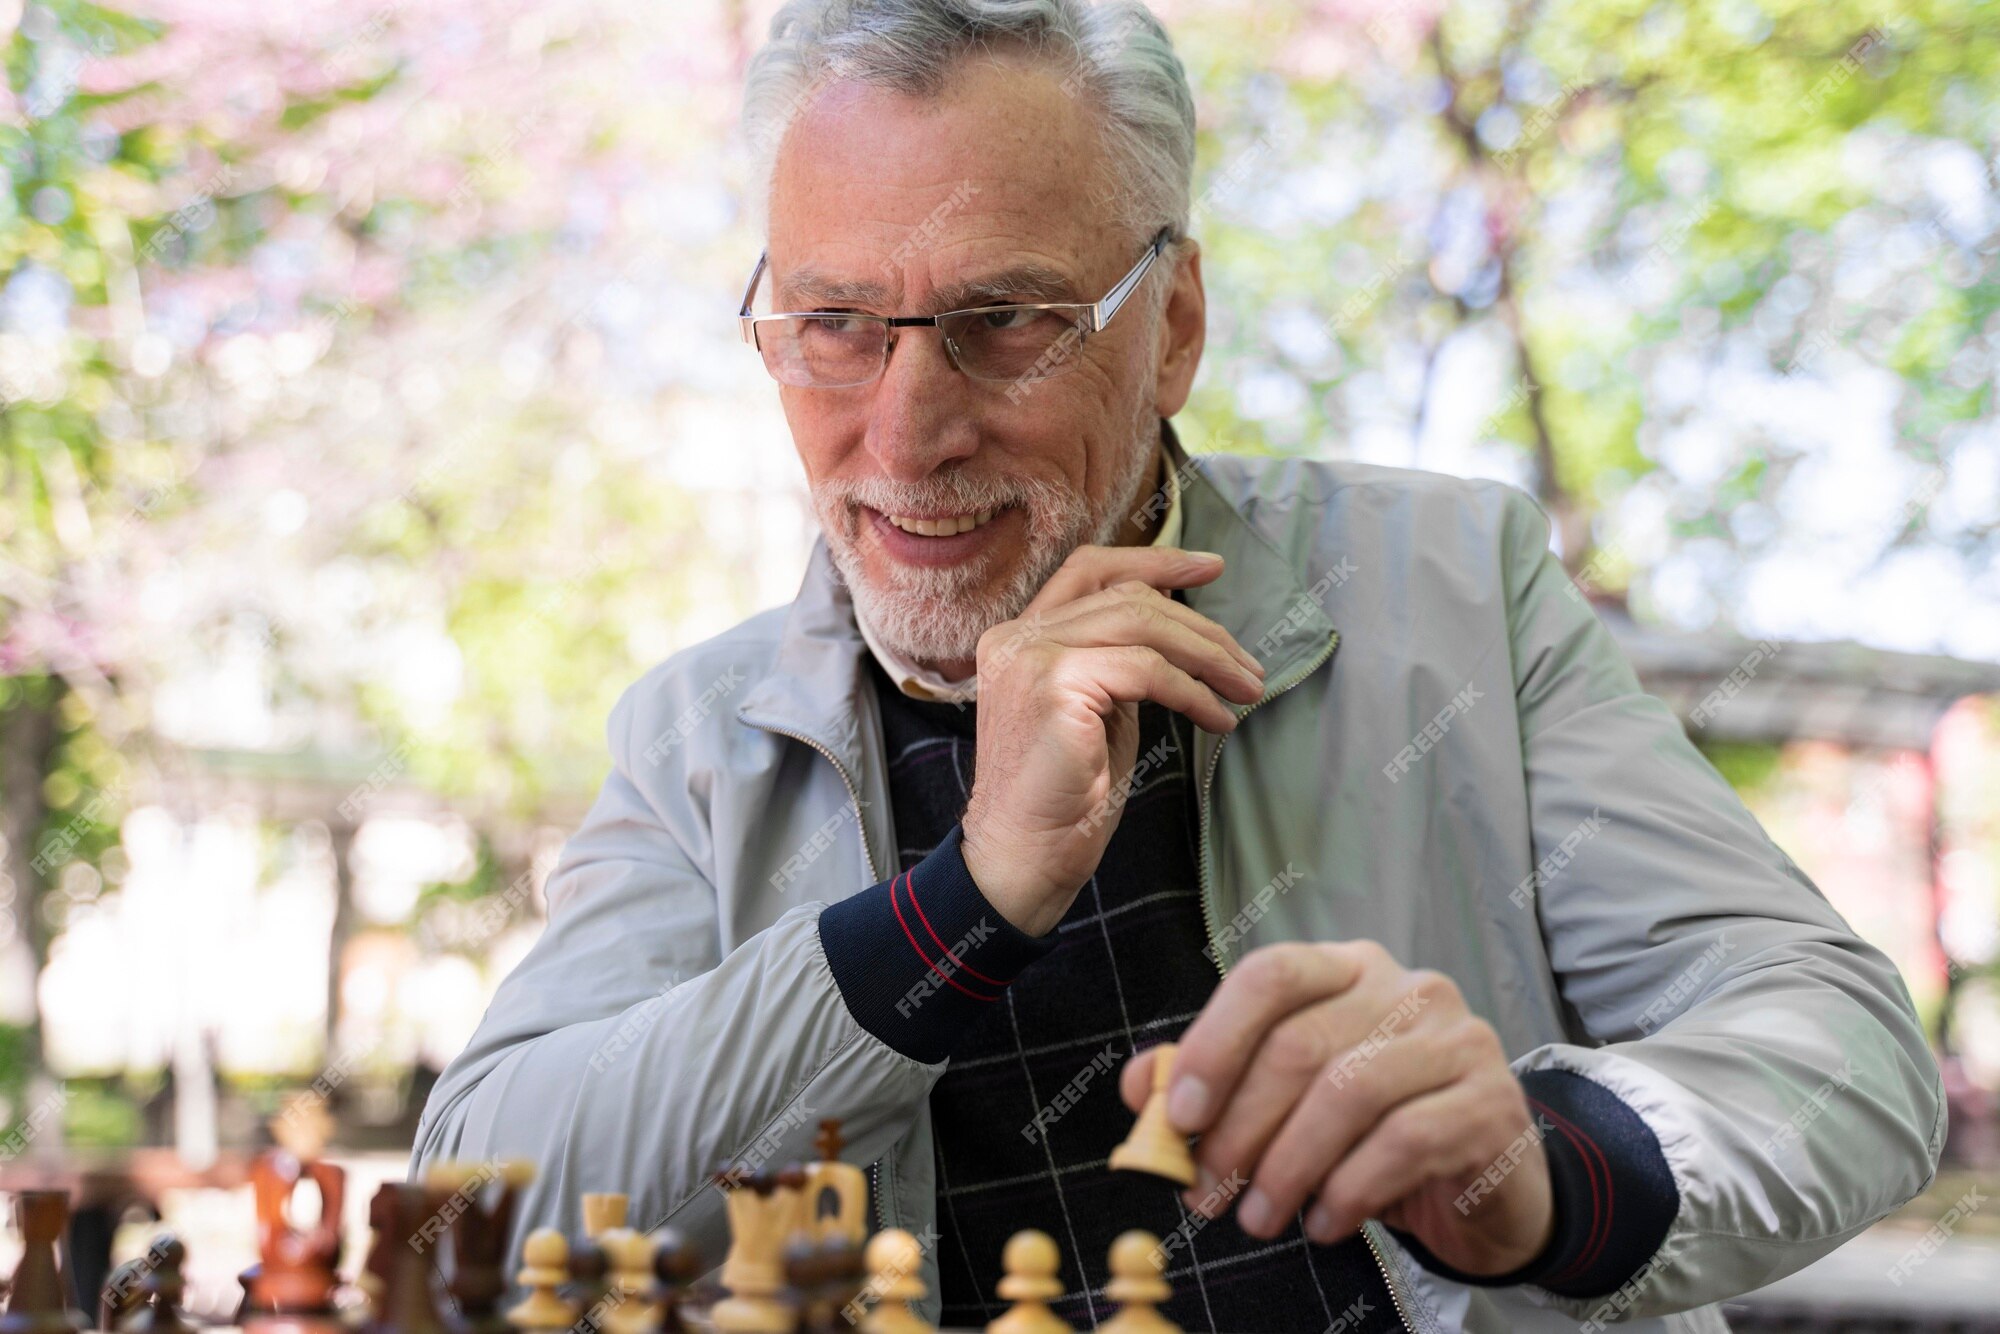 Homem jogando xadrez online - Fotos de arquivo #29098007